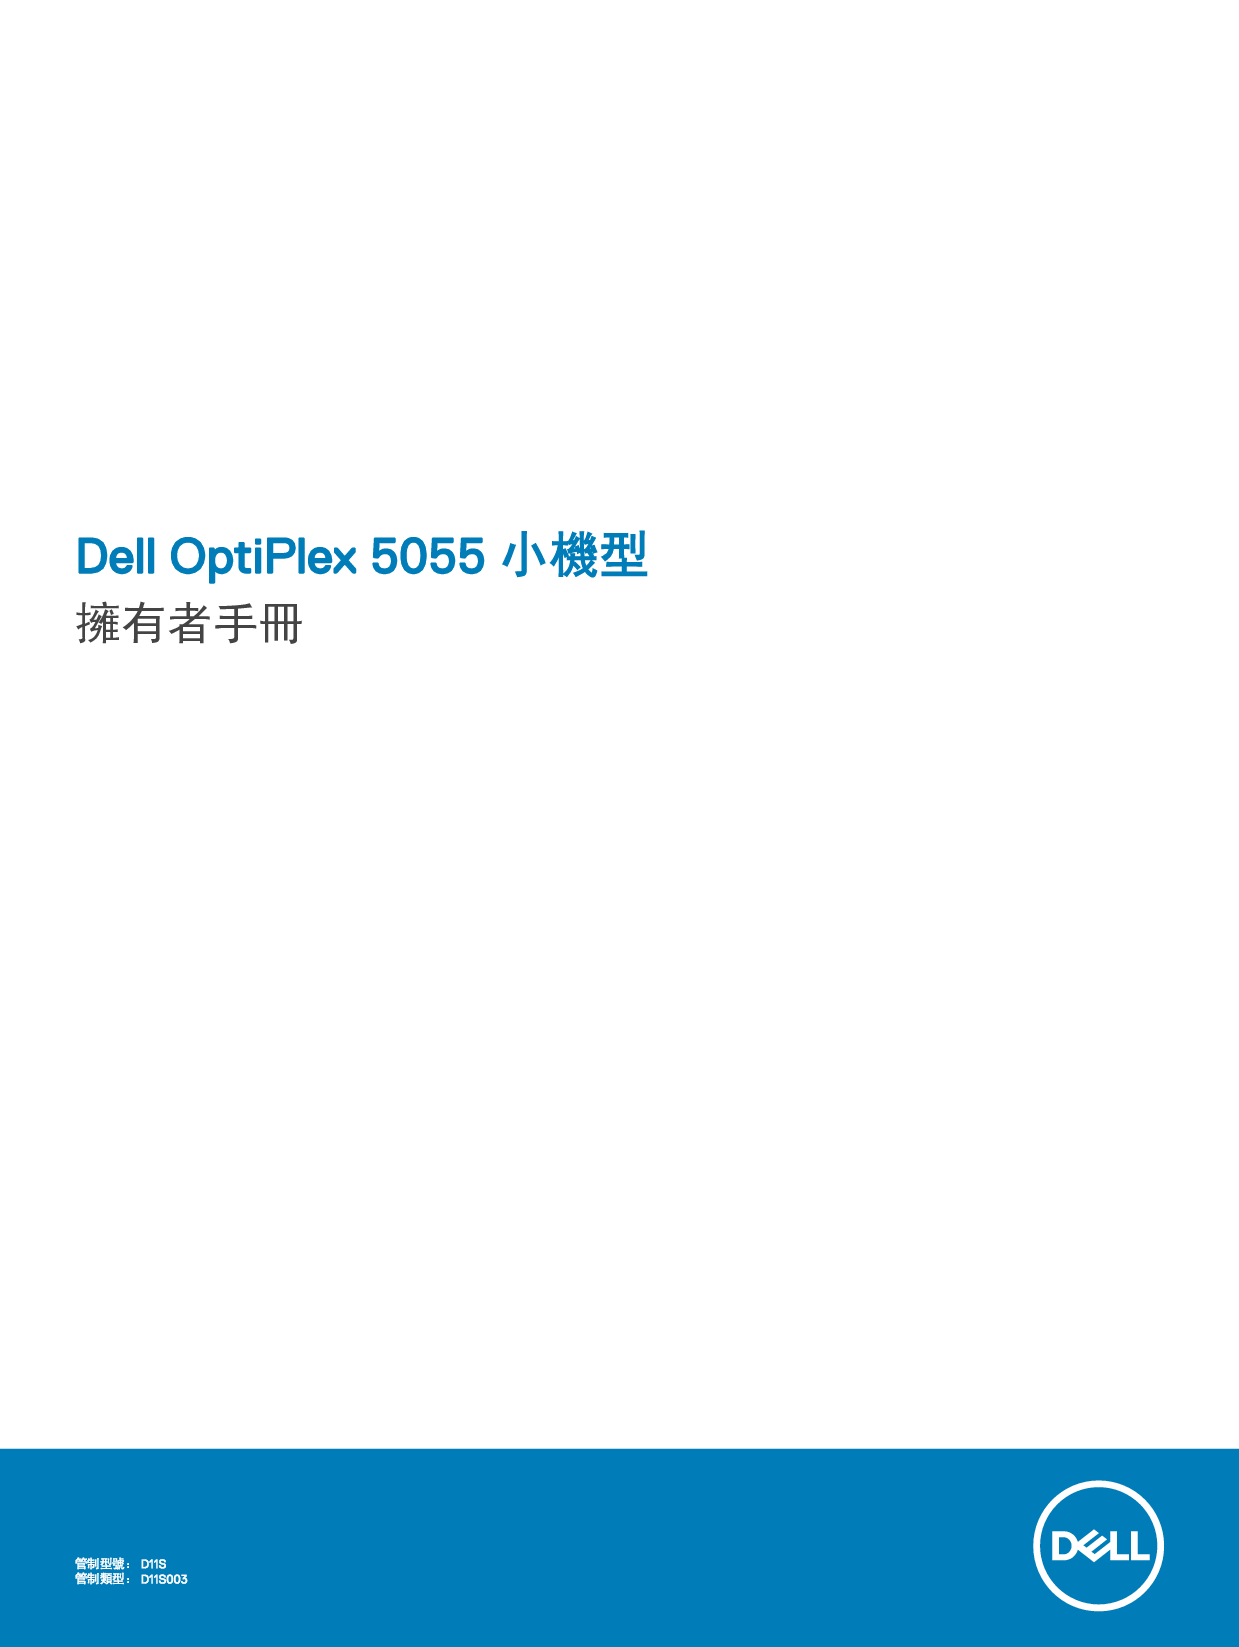 戴尔 Dell Optiplex 5055 A系列 小型 繁体 用户手册 封面